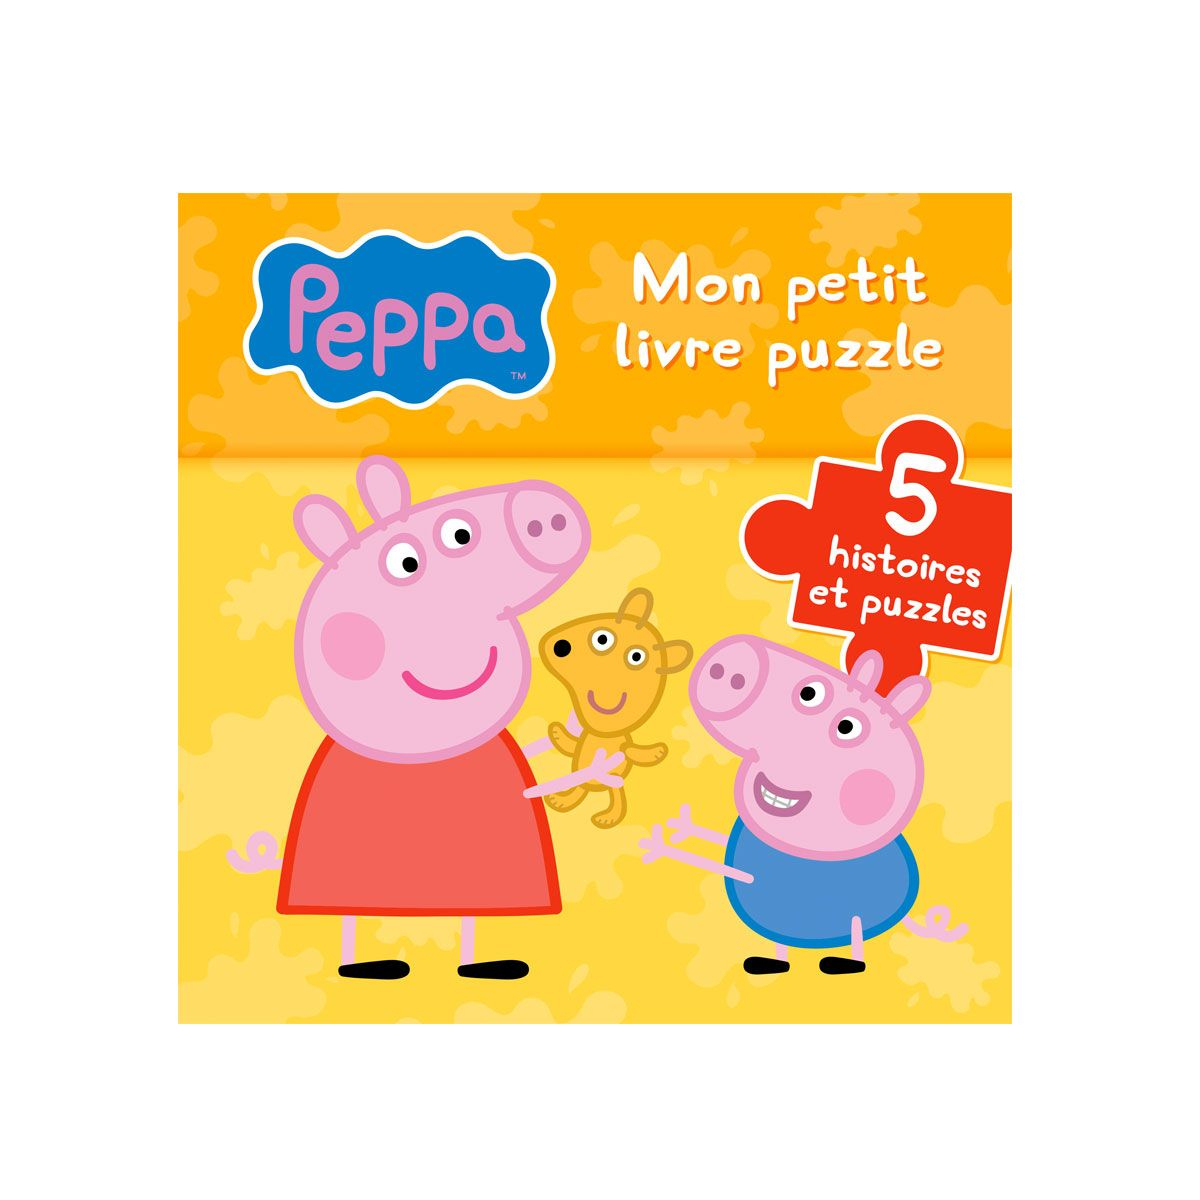 Livre Puzzle Peppa Pig | Livre Puzzle, Peppa Pig Et Jeux Eveil avec Jeux Pour Les Petit De 4 Ans 